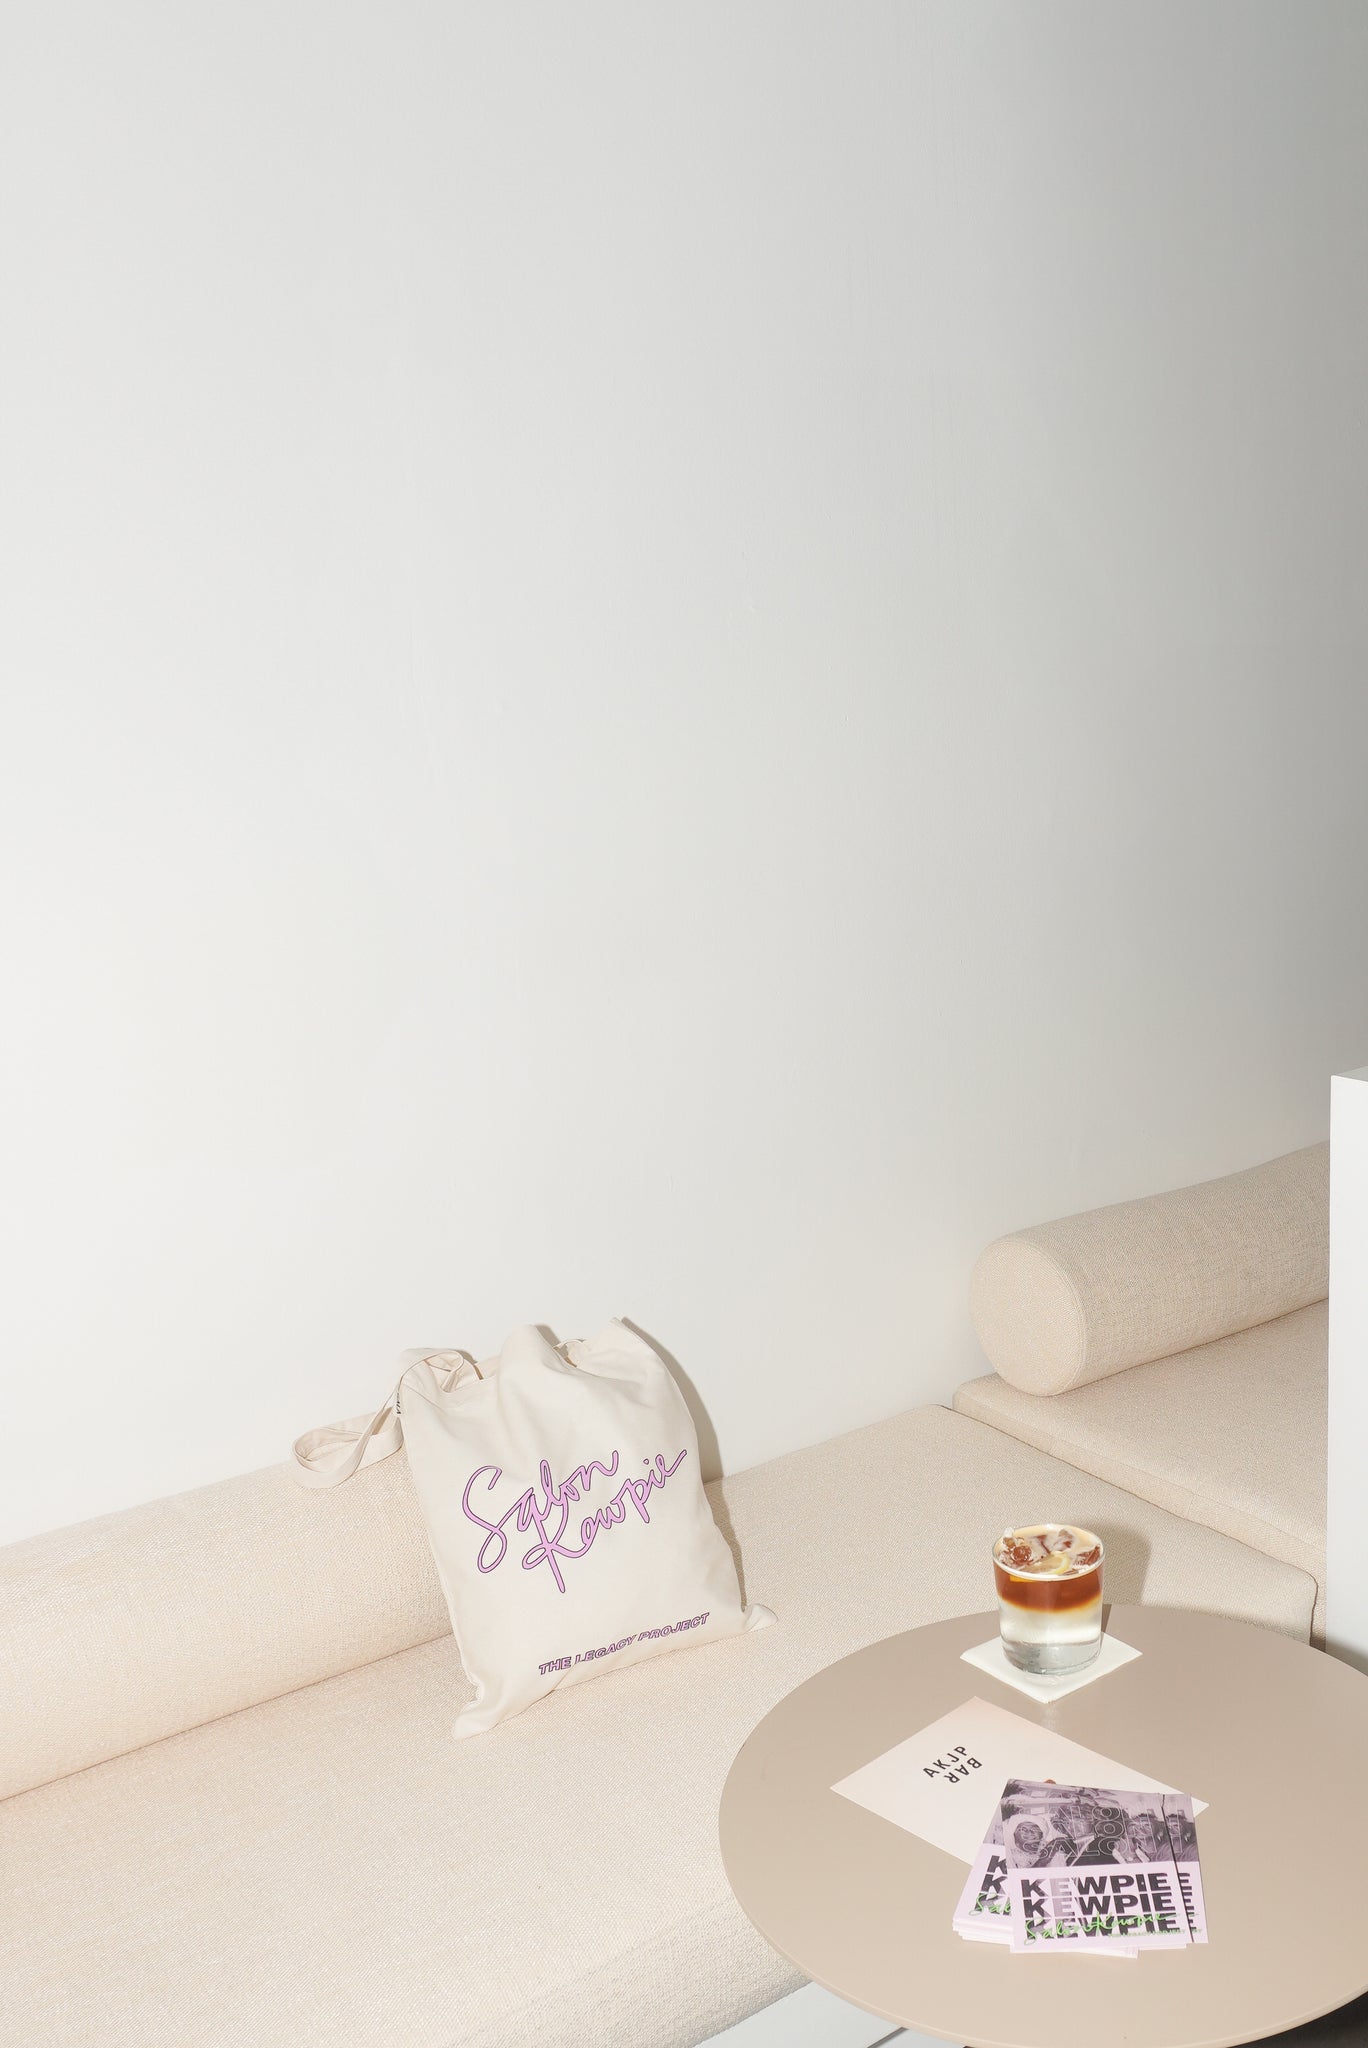 Salon Kewpie | Tote Bag + free Postcard